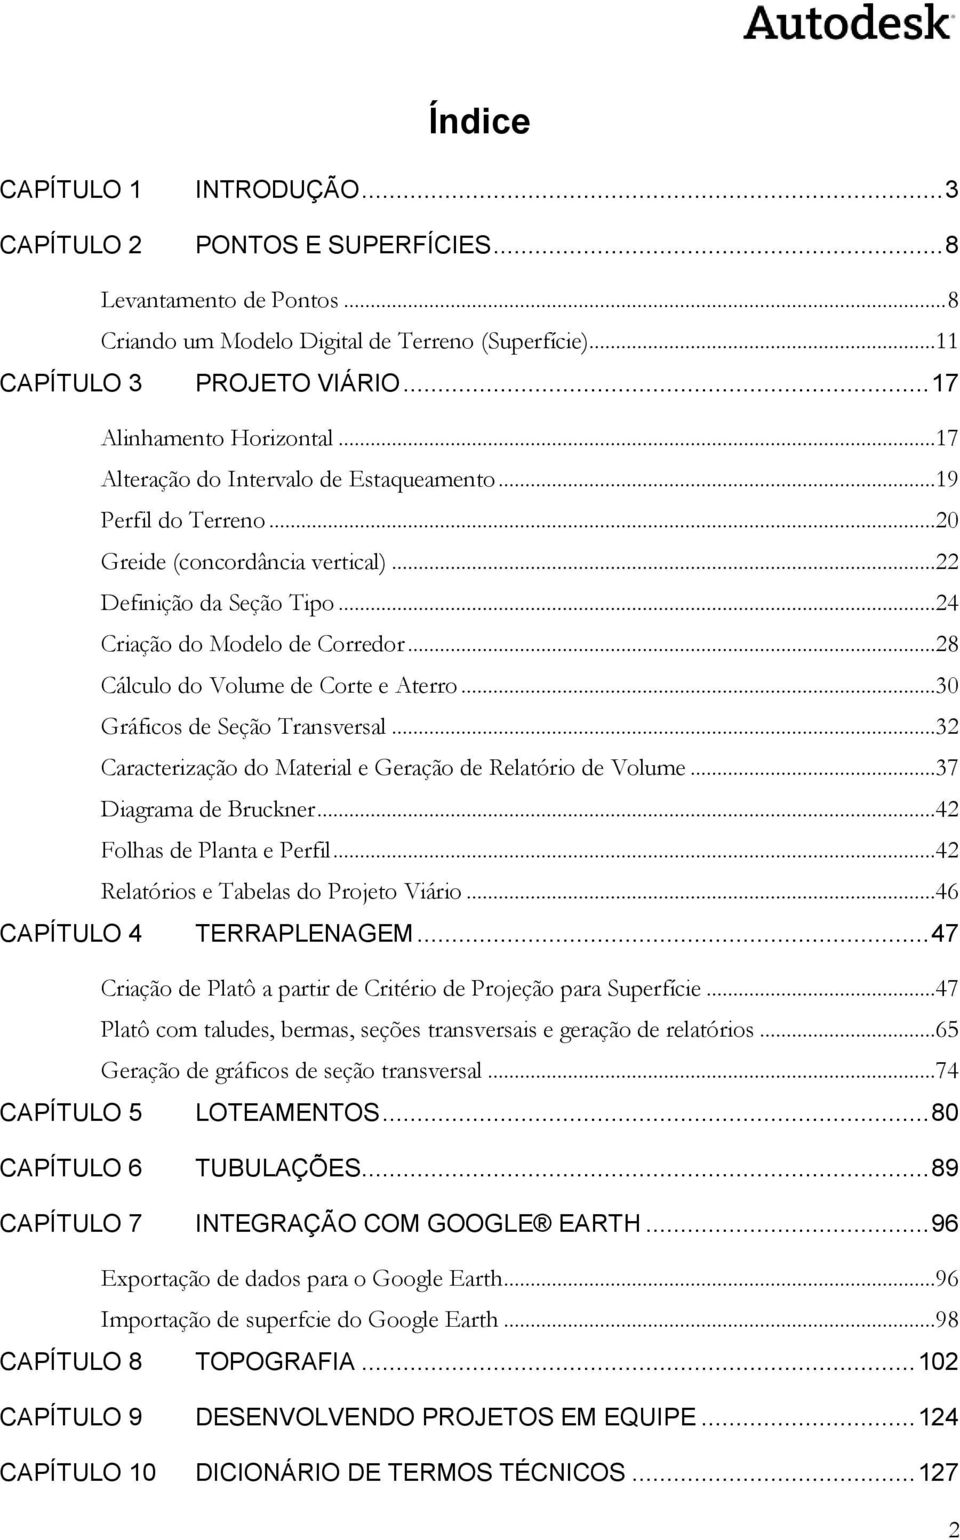 ..28 Cálculo do Volume de Corte e Aterro...30 Gráficos de Seção Transversal...32 Caracterização do Material e Geração de Relatório de Volume...37 Diagrama de Bruckner...42 Folhas de Planta e Perfil.